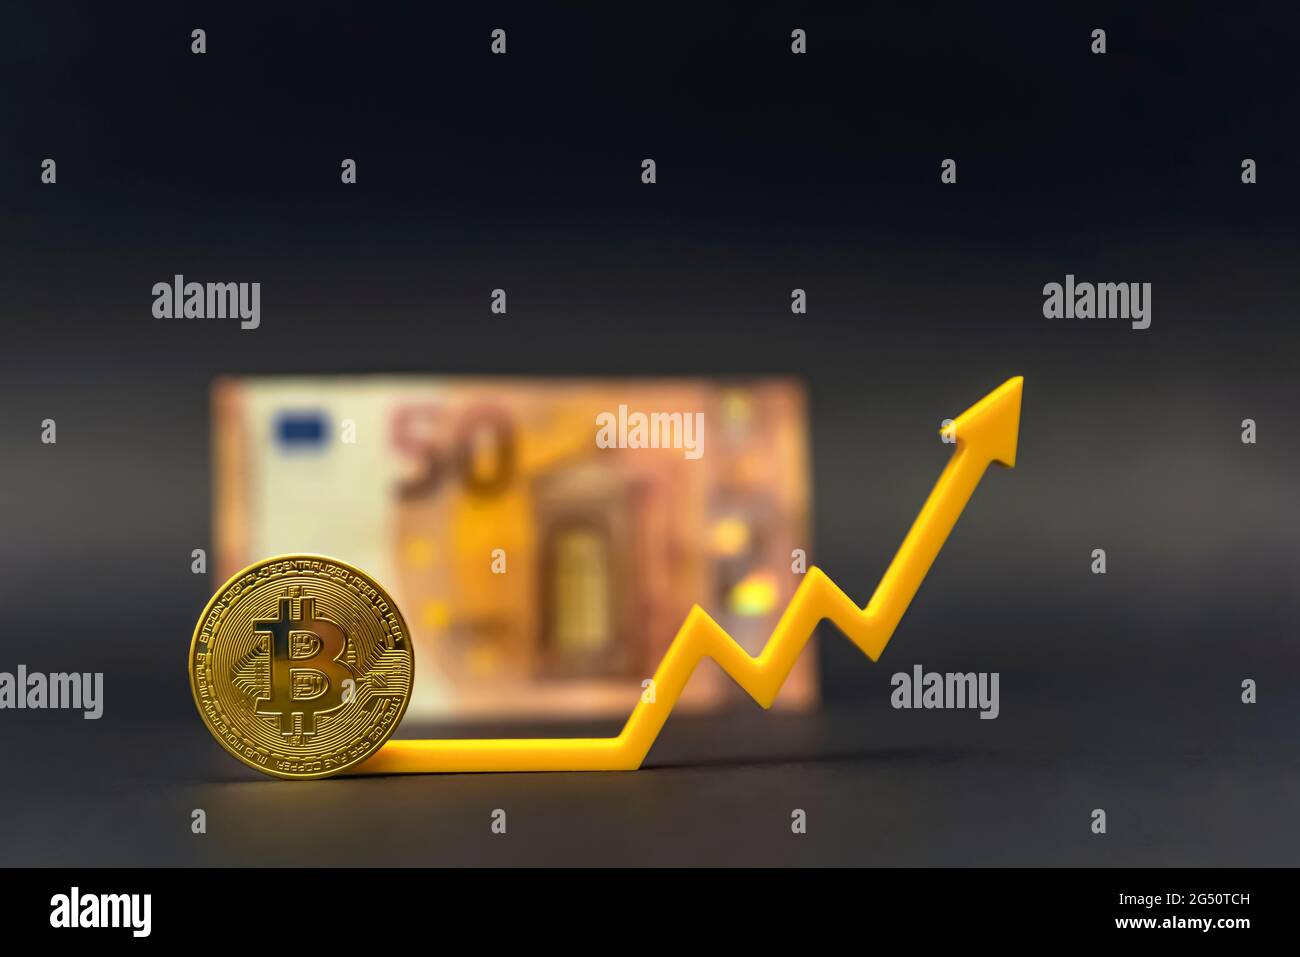 Bitcoin-Preis, Kryptowährungswert. Bitcoin-Münze auf dem Hintergrund einer 50-Euro-Banknote, auf schwarzem Hintergrund. Stockfoto